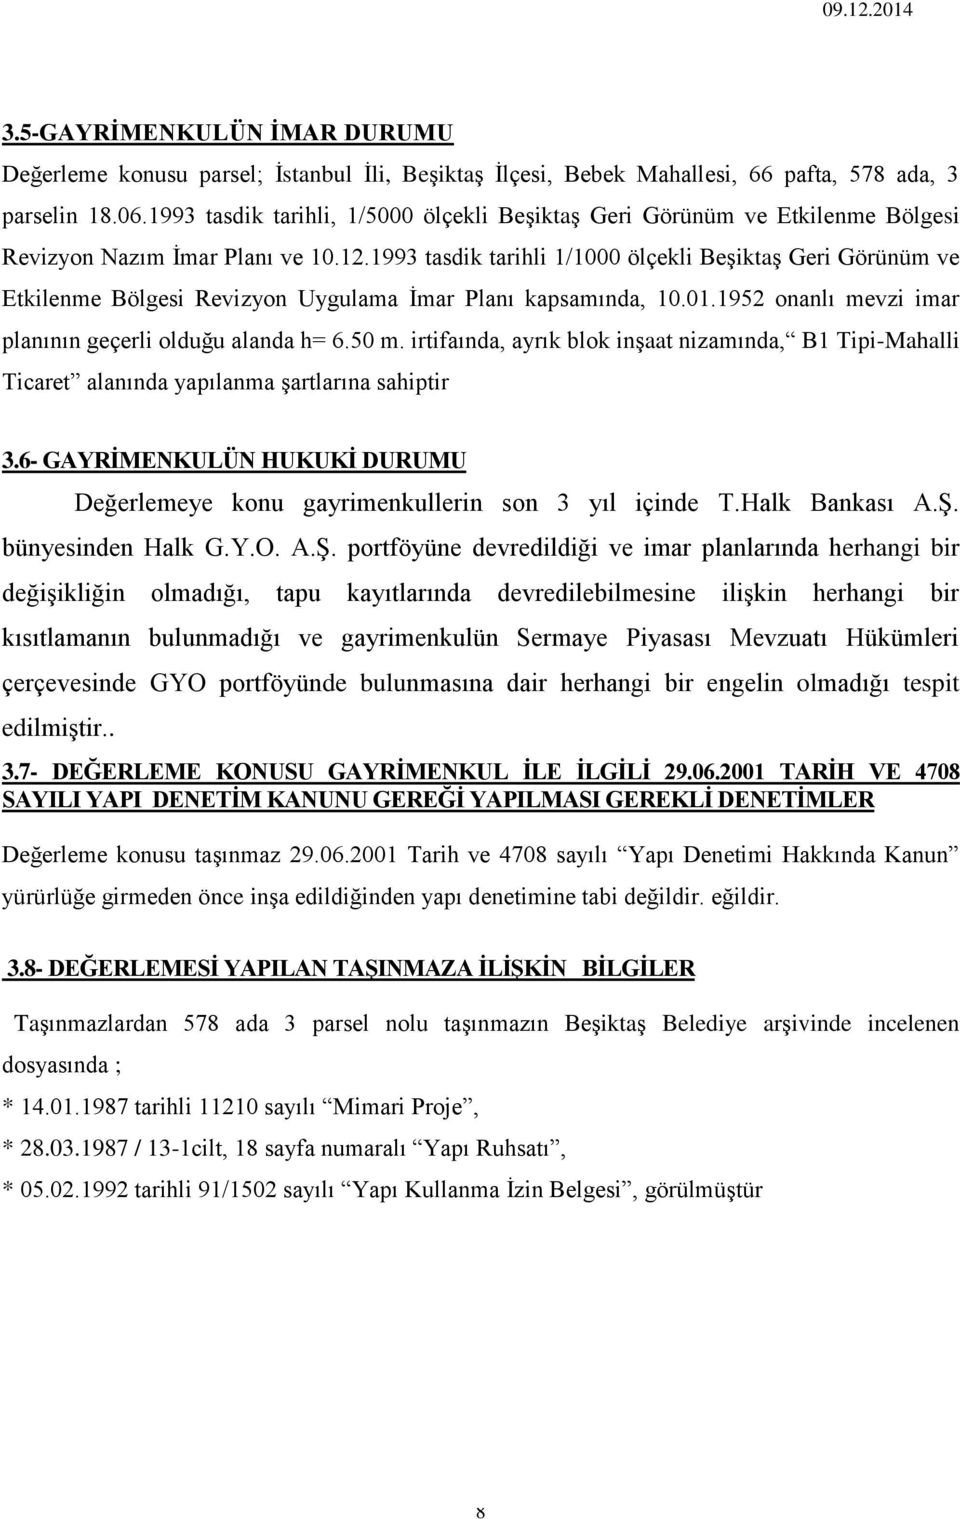 1993 tasdik tarihli 1/1000 ölçekli Beşiktaş Geri Görünüm ve Etkilenme Bölgesi Revizyon Uygulama İmar Planı kapsamında, 10.01.1952 onanlı mevzi imar planının geçerli olduğu alanda h= 6.50 m.